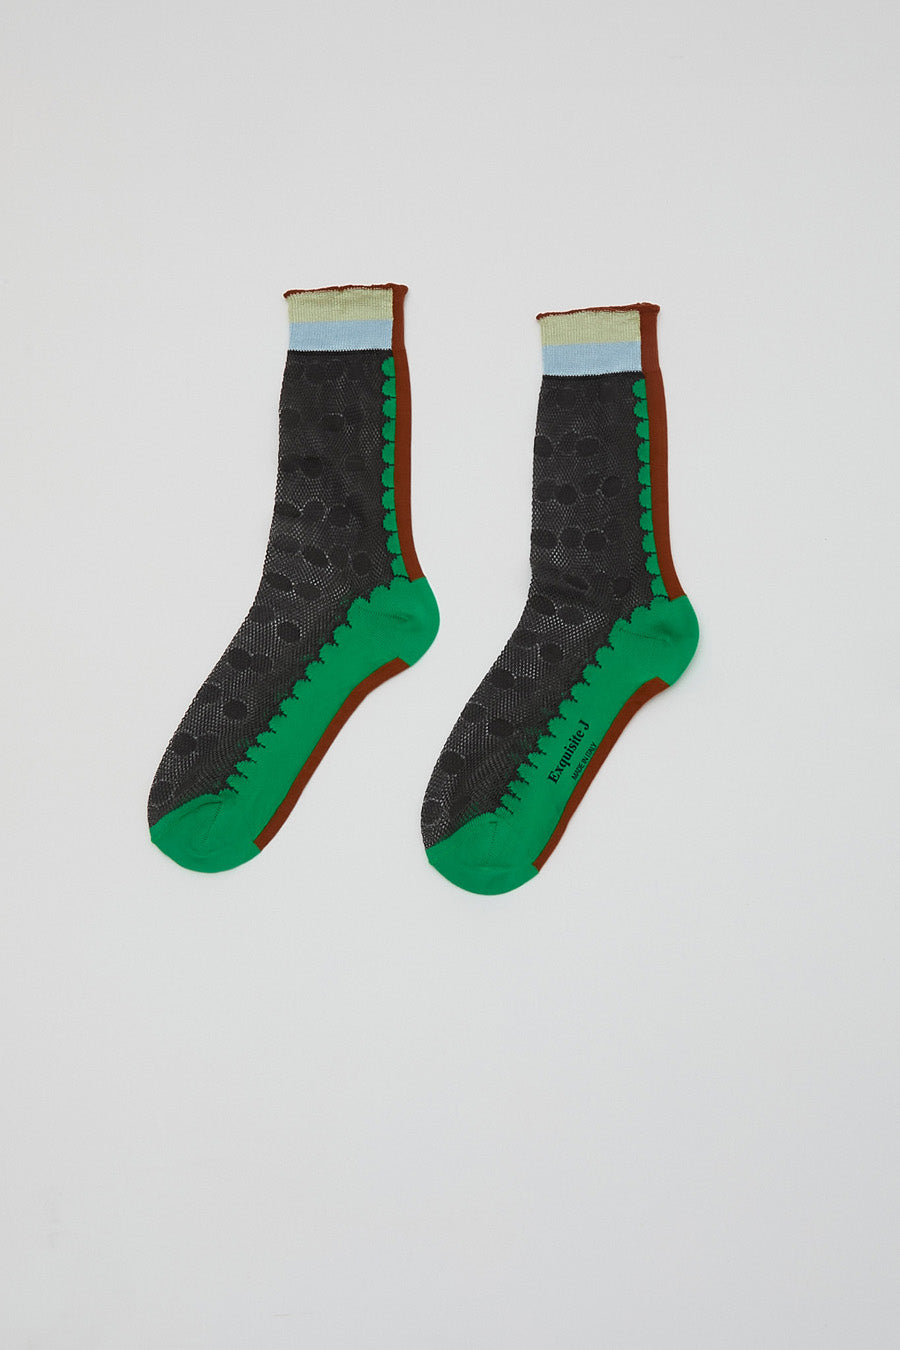 Exquisite J Sheer Dot Print Socks in Black